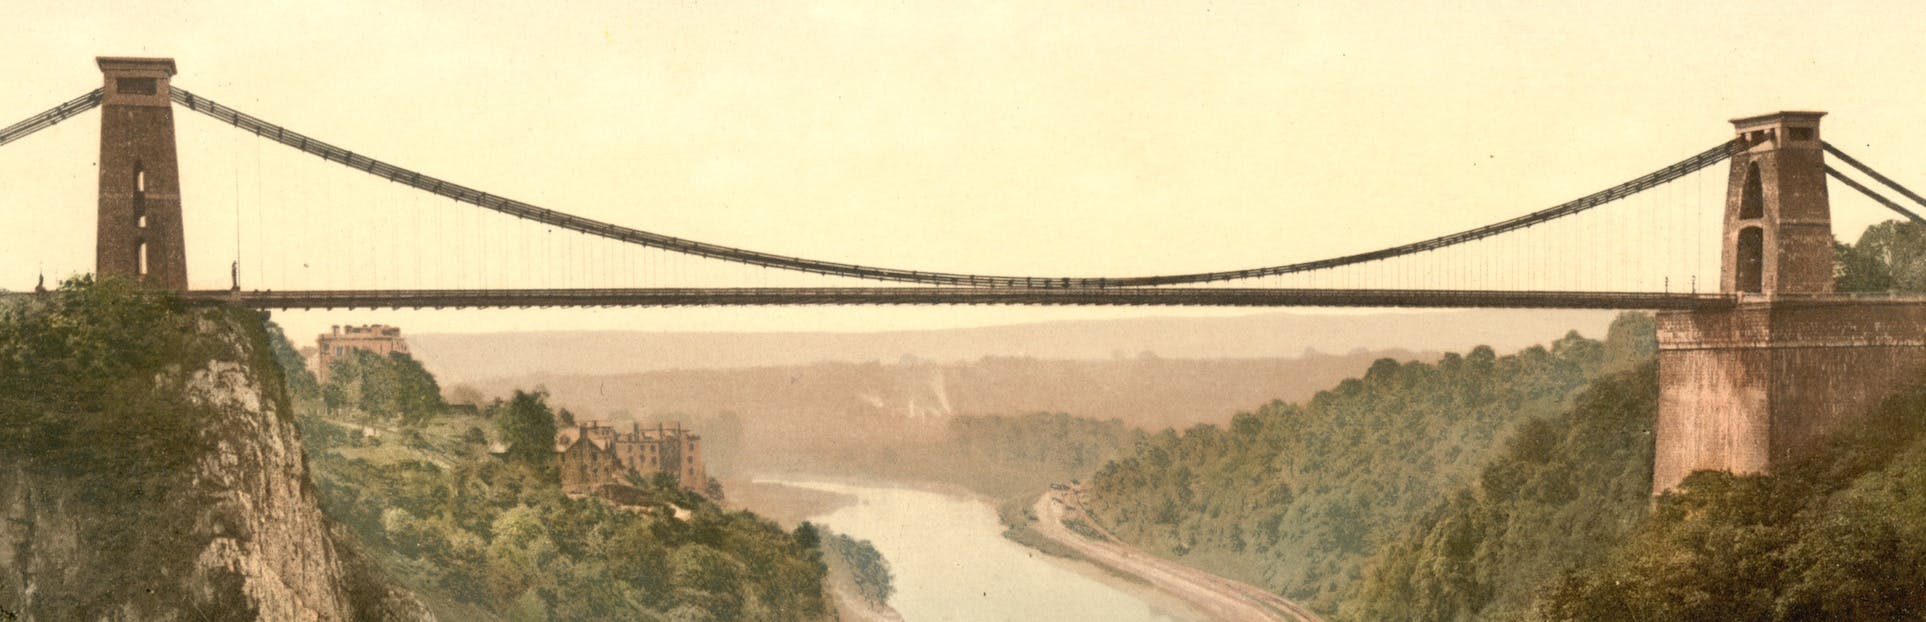 Ontdek de boot en brug van Brunel tijdens een zelfgeleide audiotour in Bristol